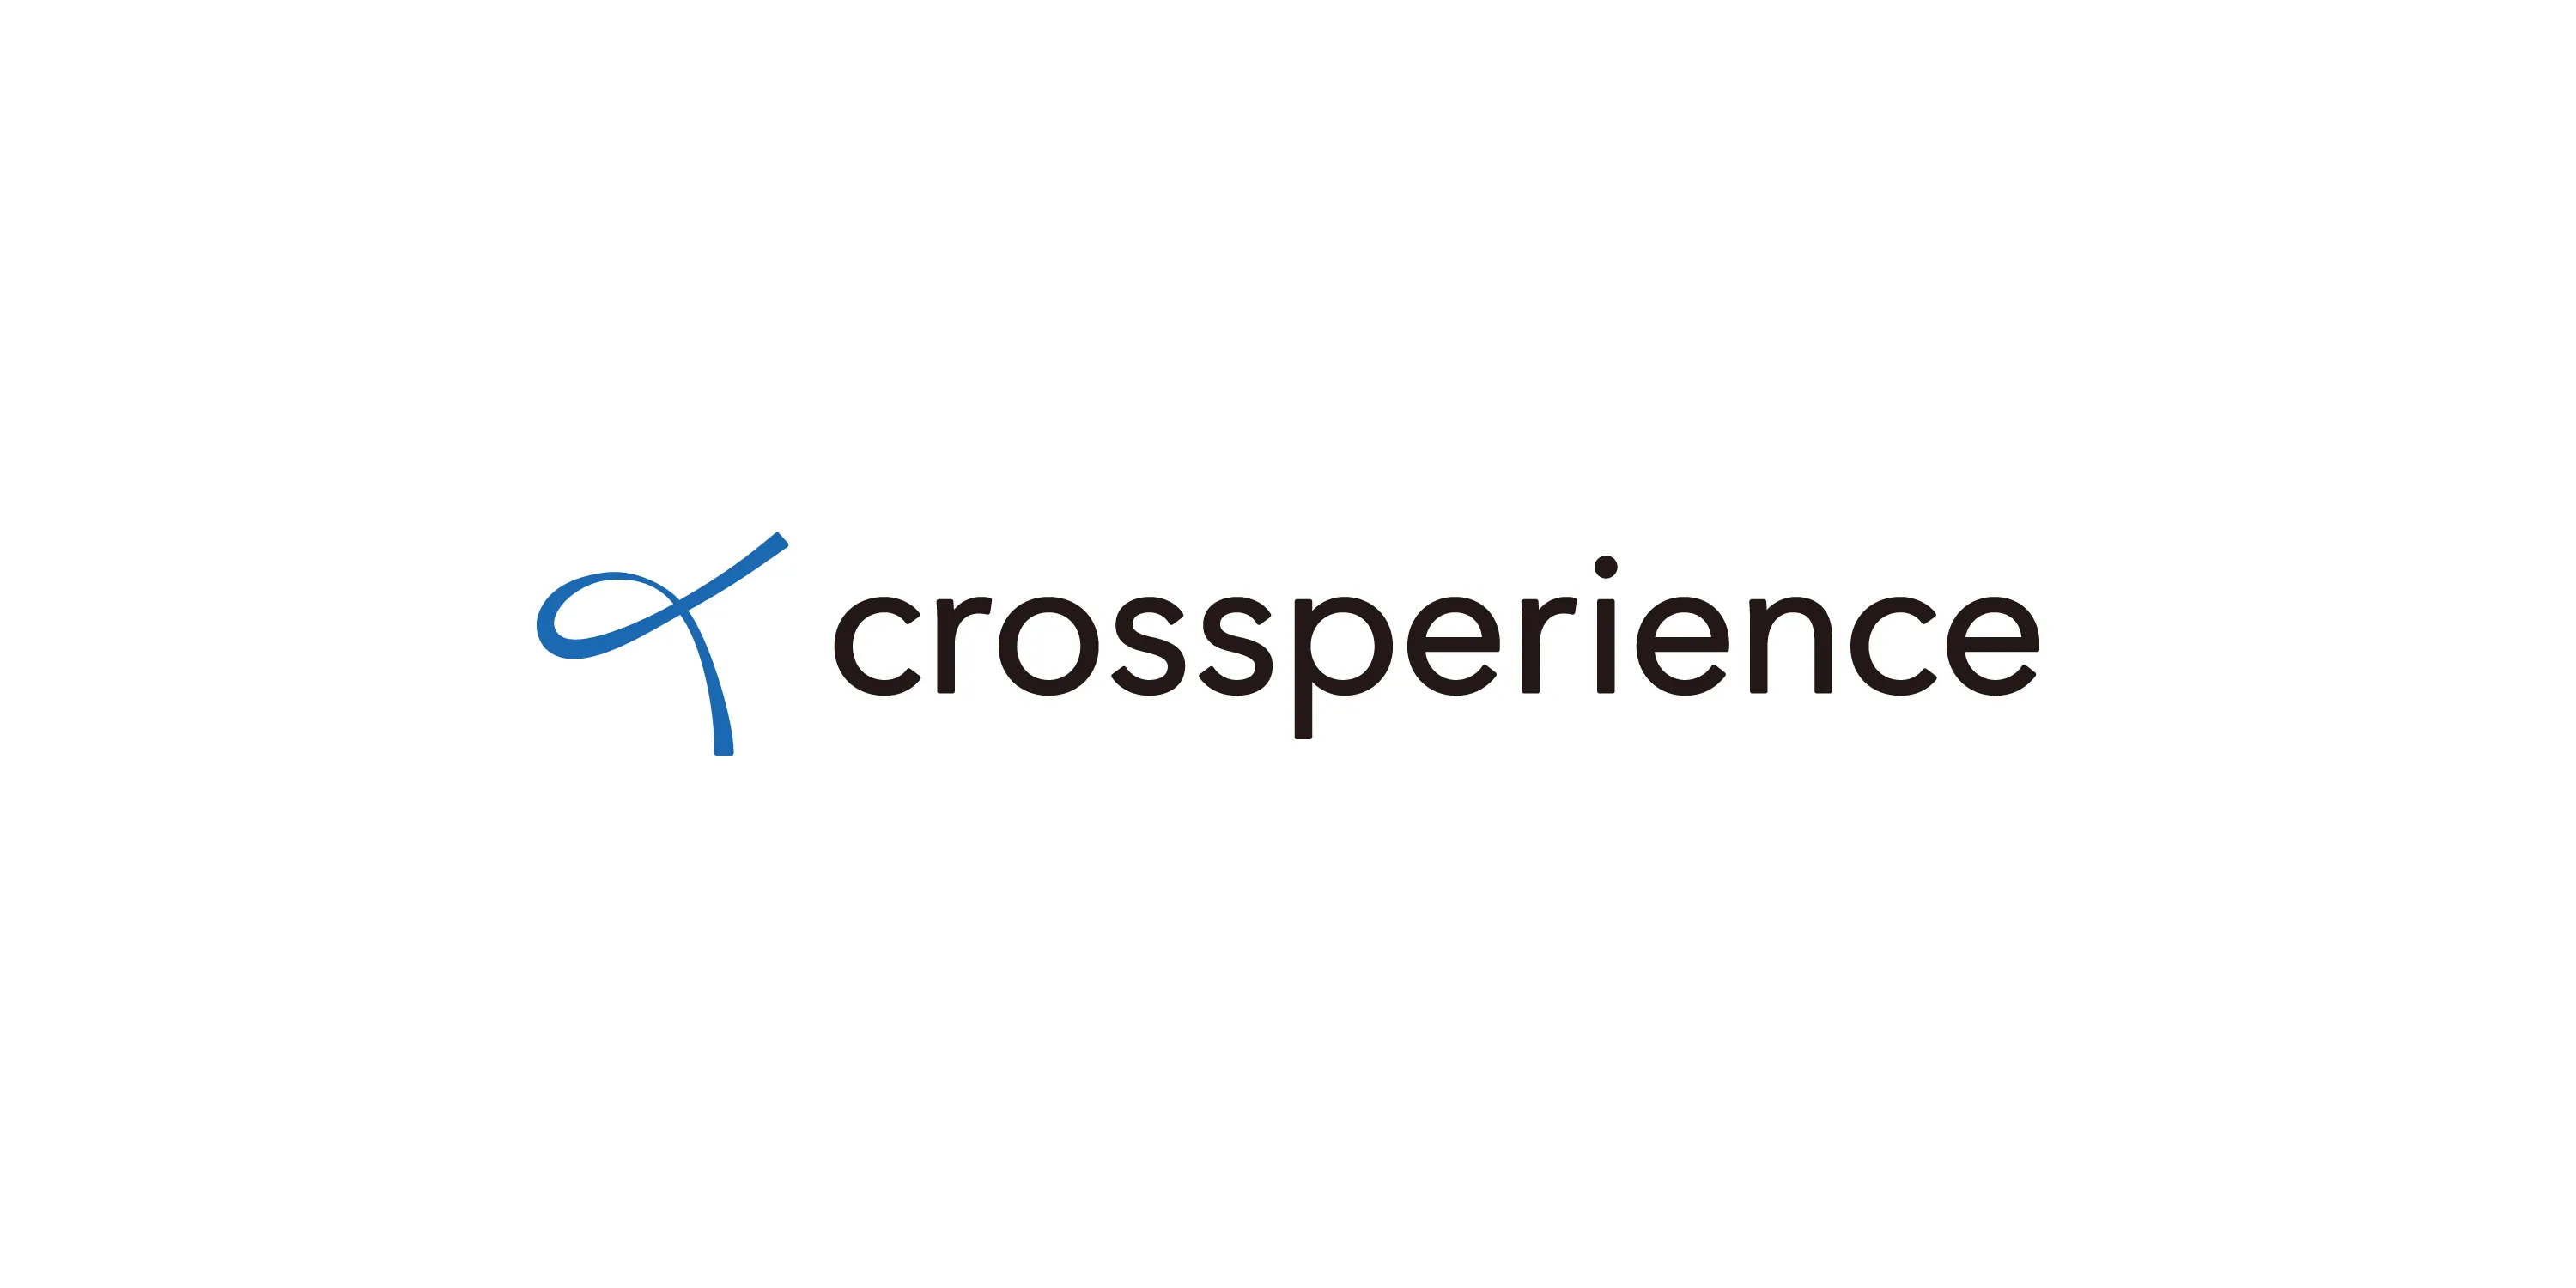 crossperience